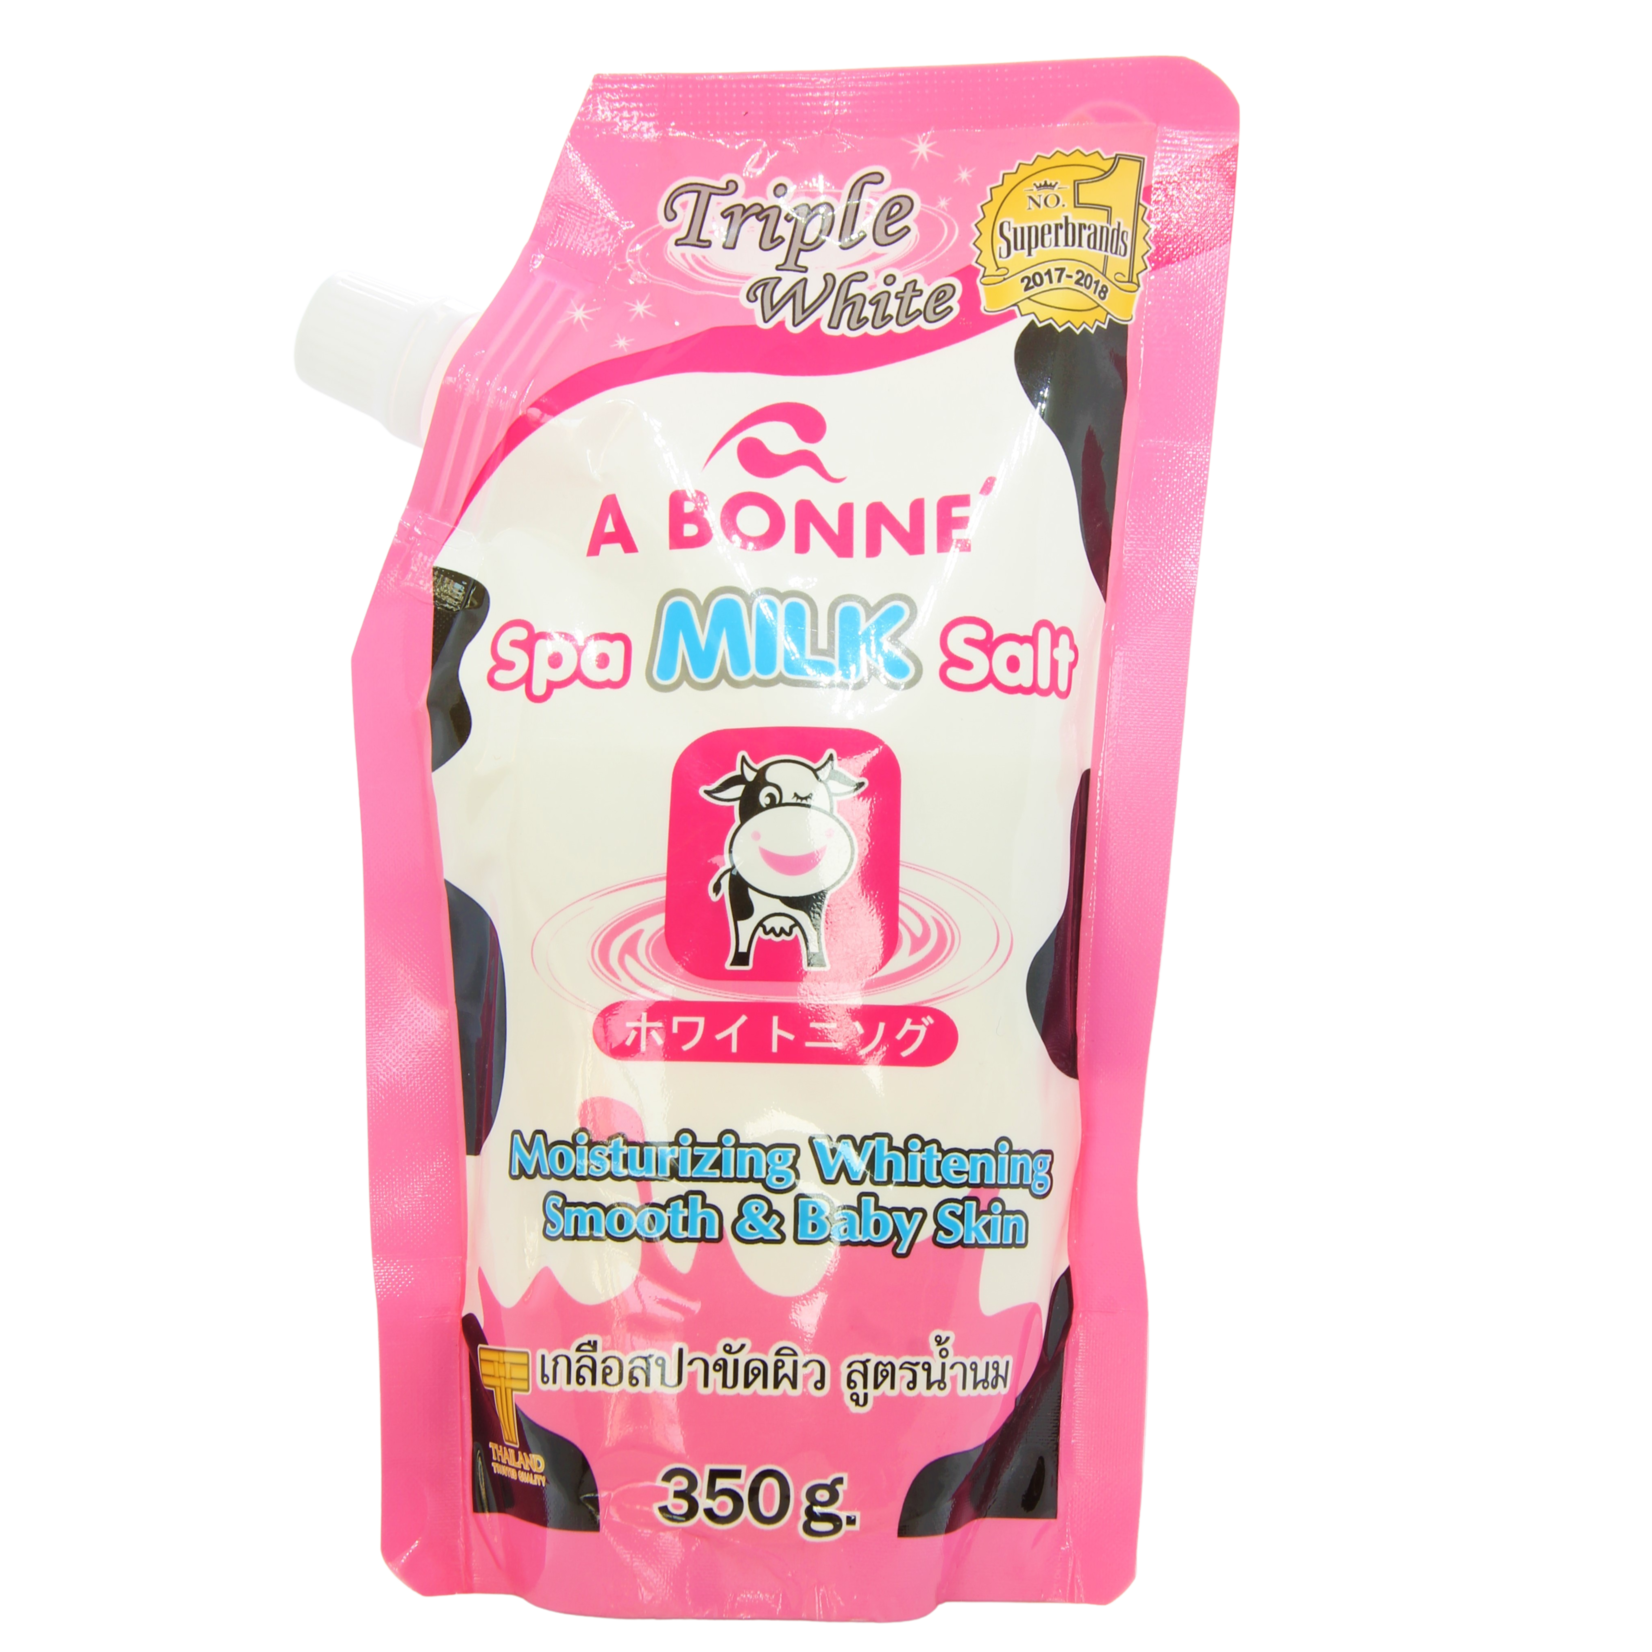 A Bonné, ervaar de schoonheids- en gezondheidsvoordelen van melk! A Bonne Spa Milk Salt 350gr